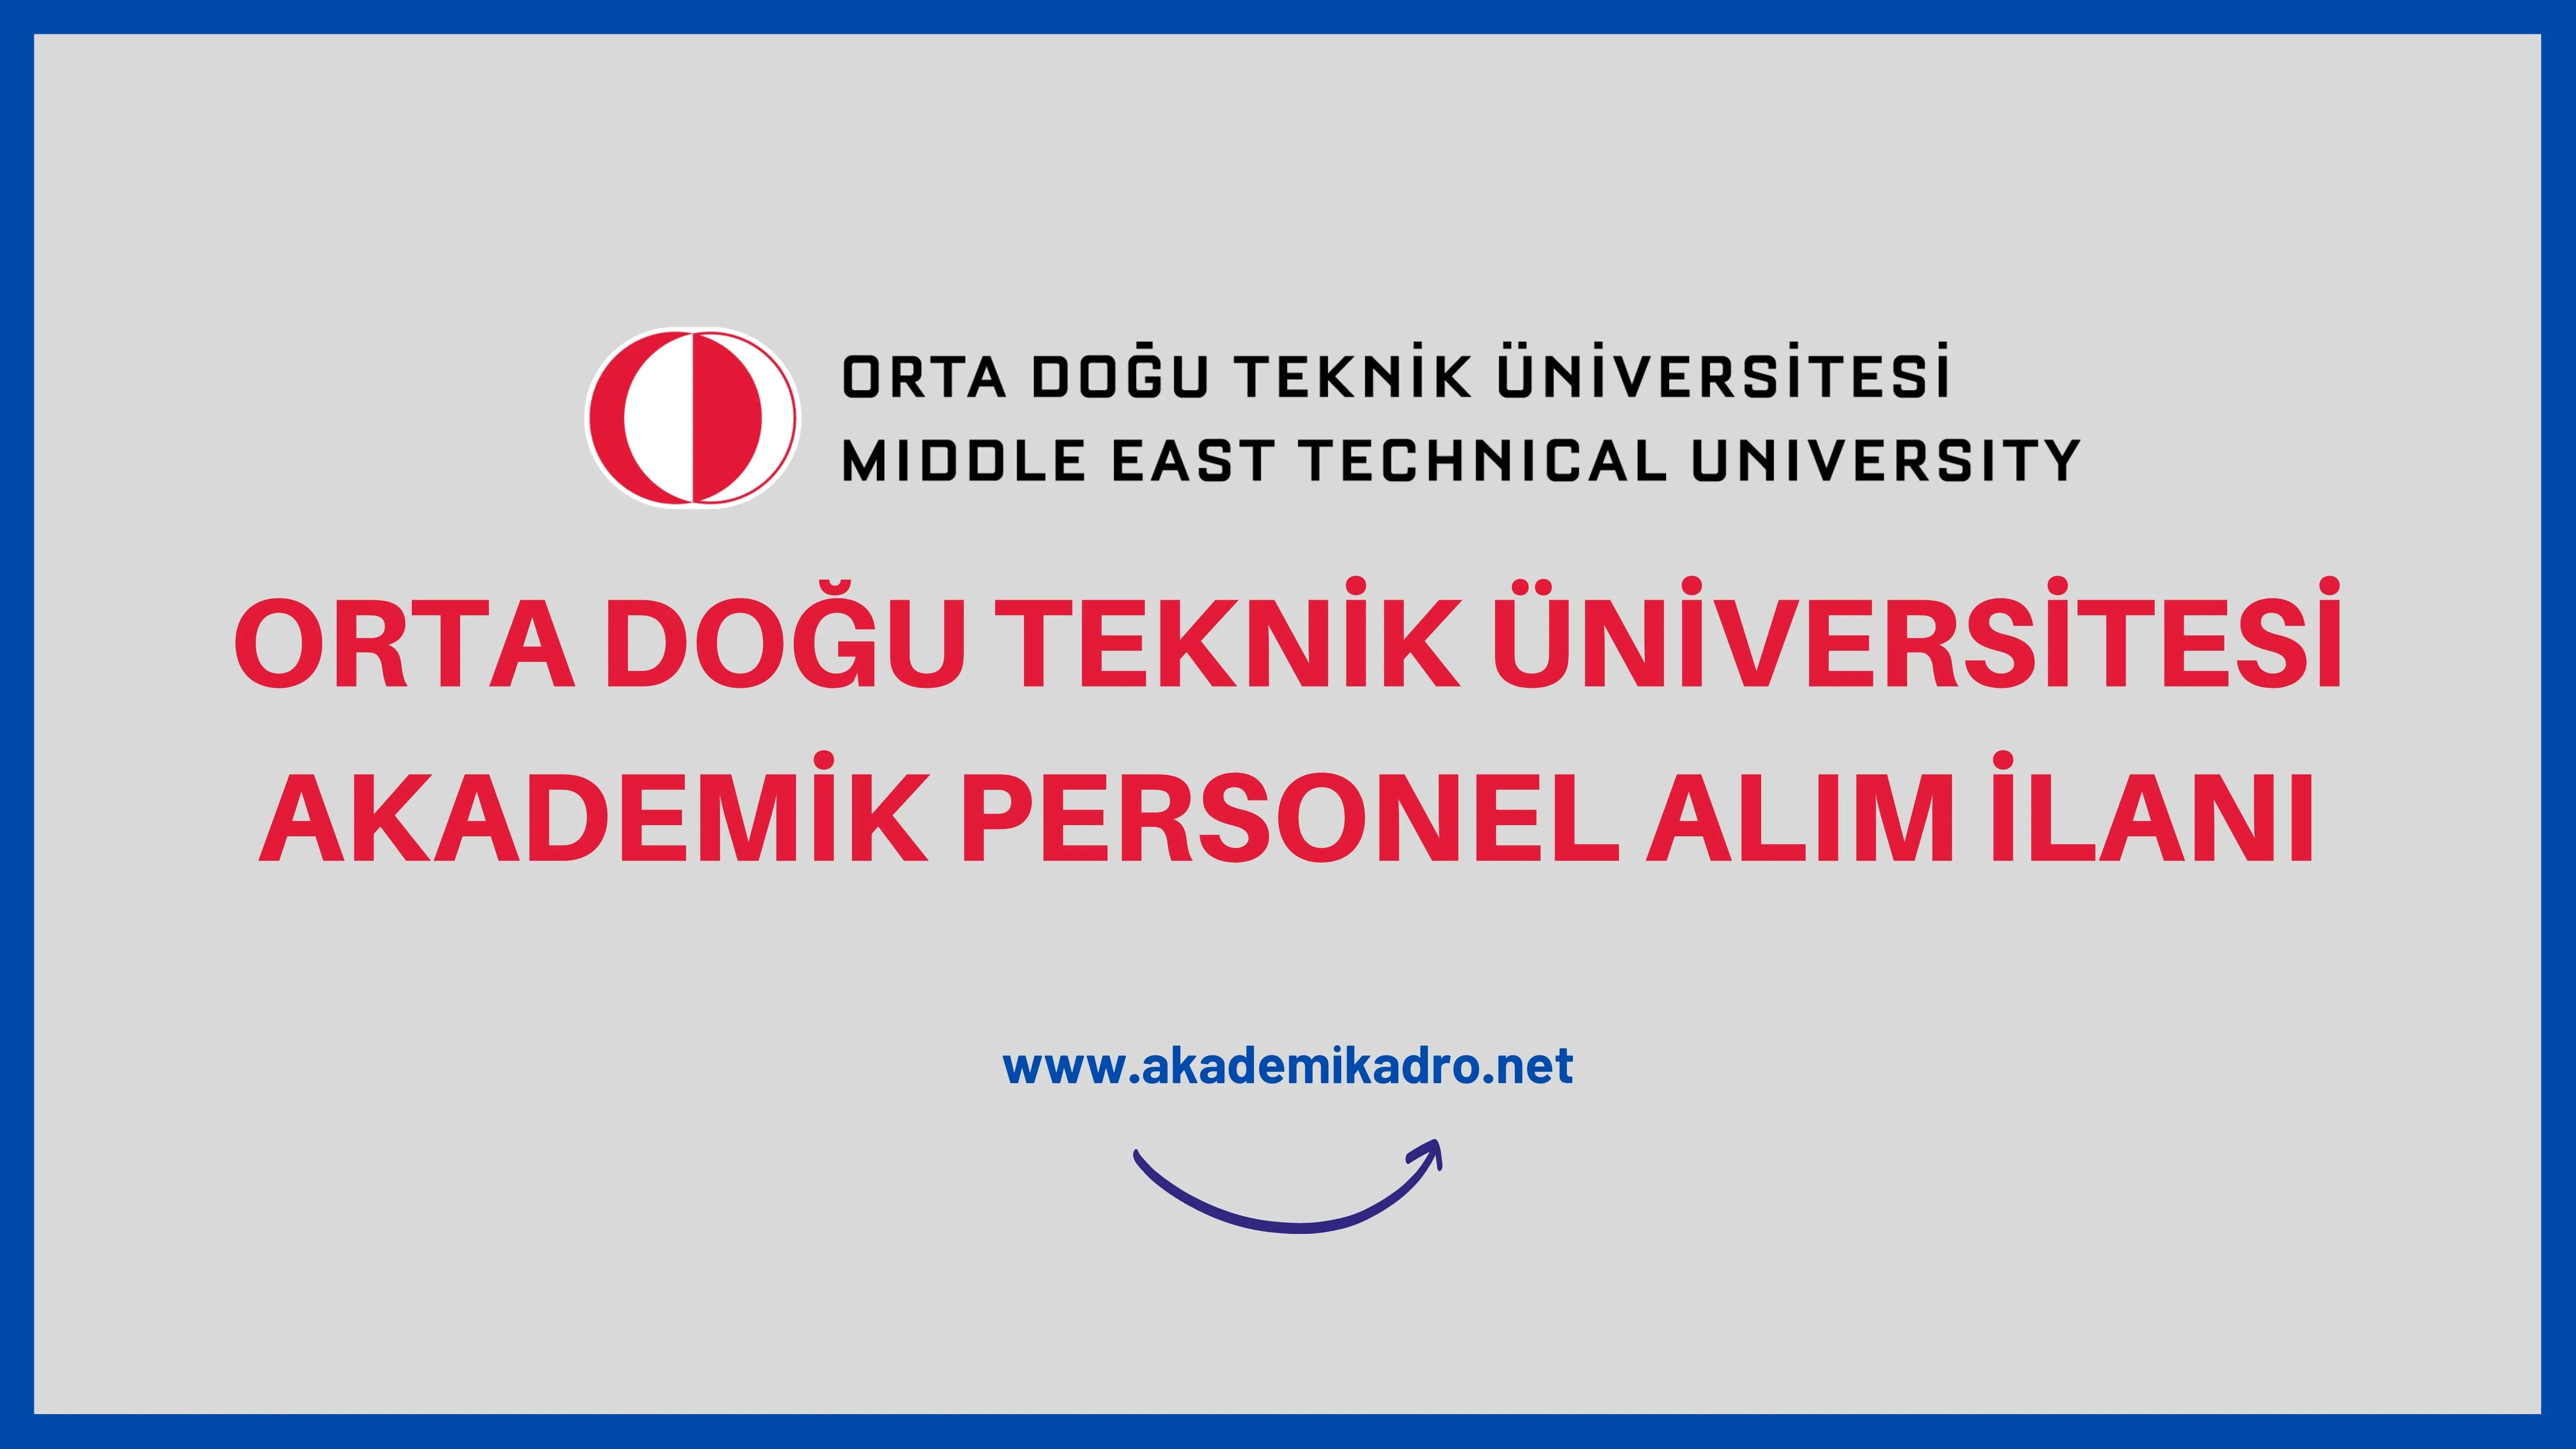 Orta Doğu Teknik Üniversitesi birçok alandan 12 akademik personel alacak. Son başvuru tarihi 21 Eylül 2022